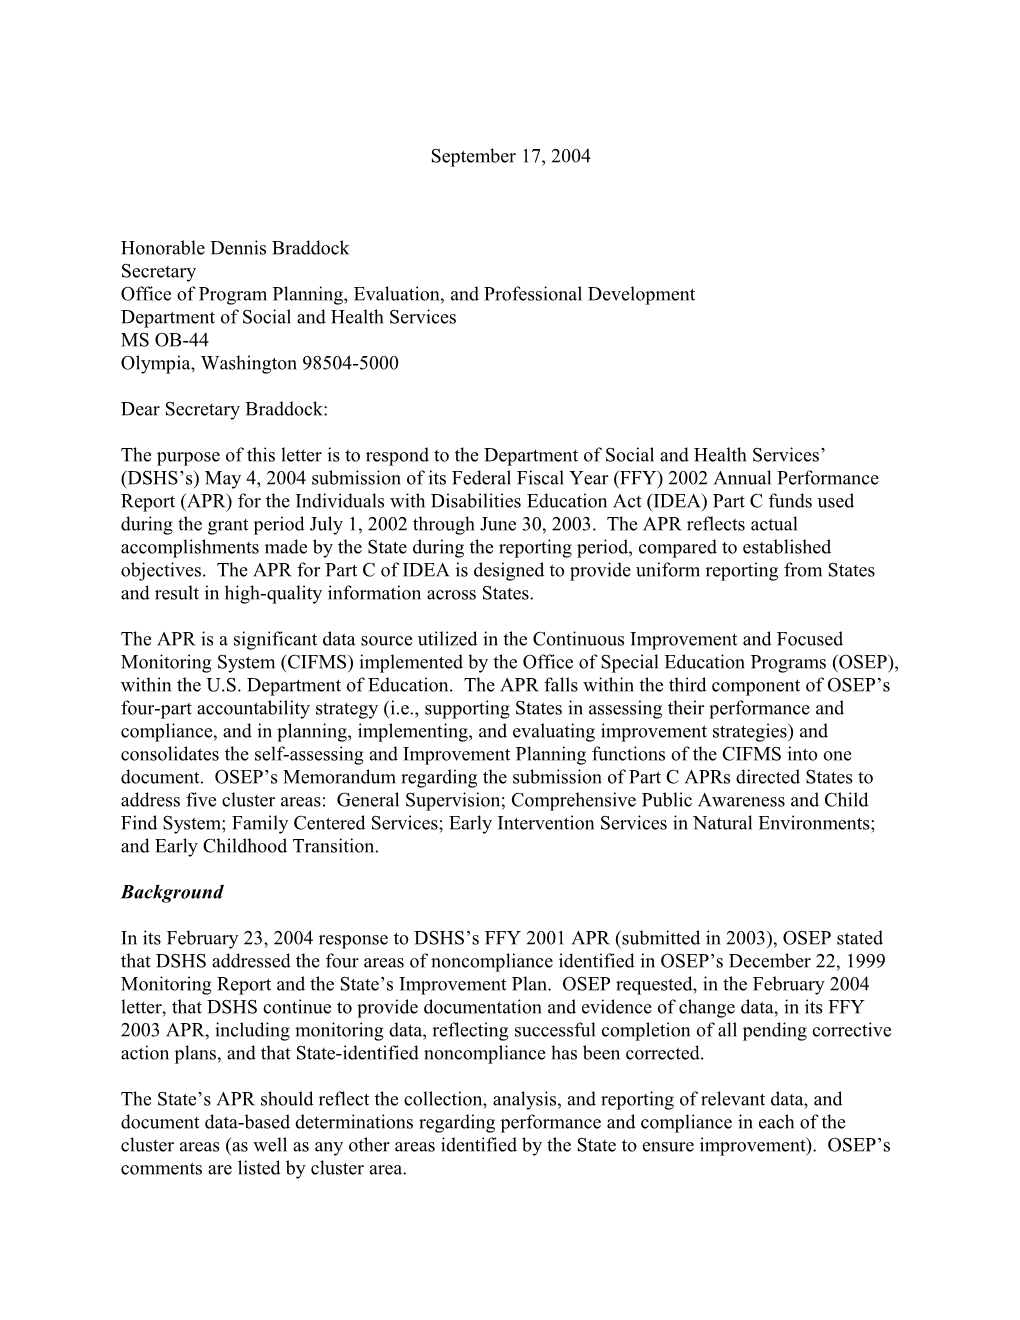 Washington Part C APR Letter, 2002-2003 (MS Word)